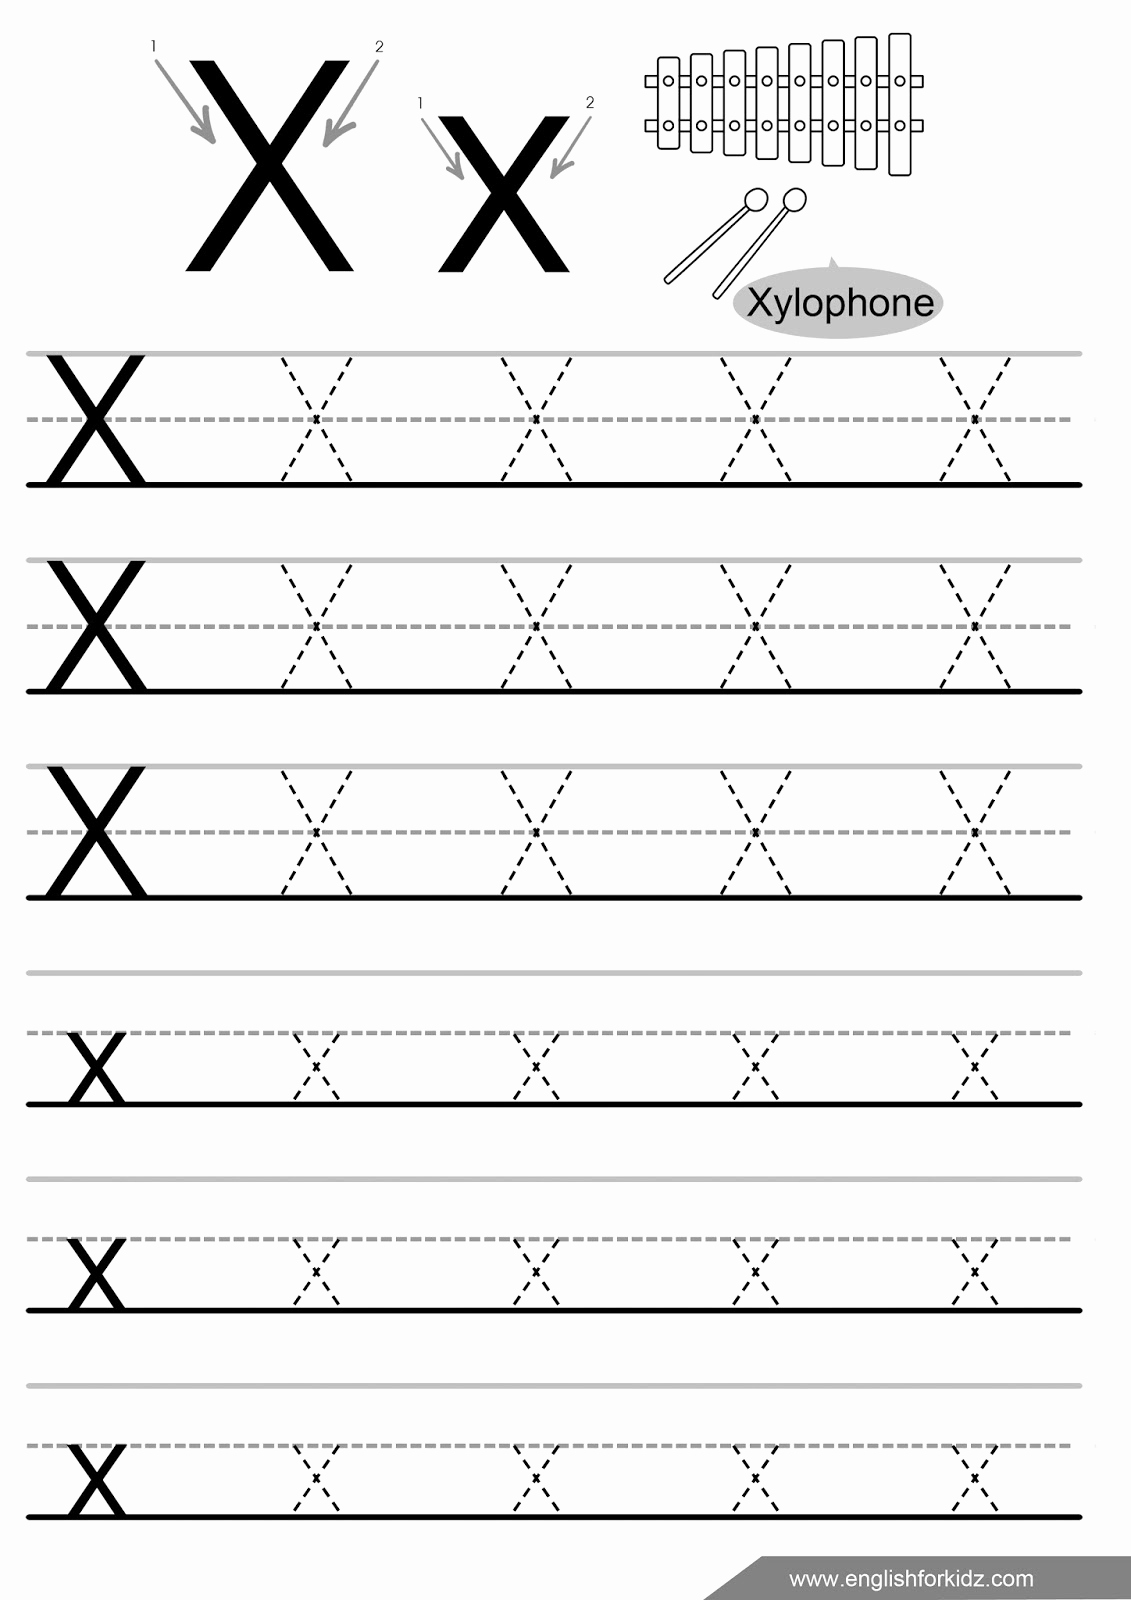 Letter X Worksheets for Kindergarten Best Of Free Printable Letter X Tracing Worksheets